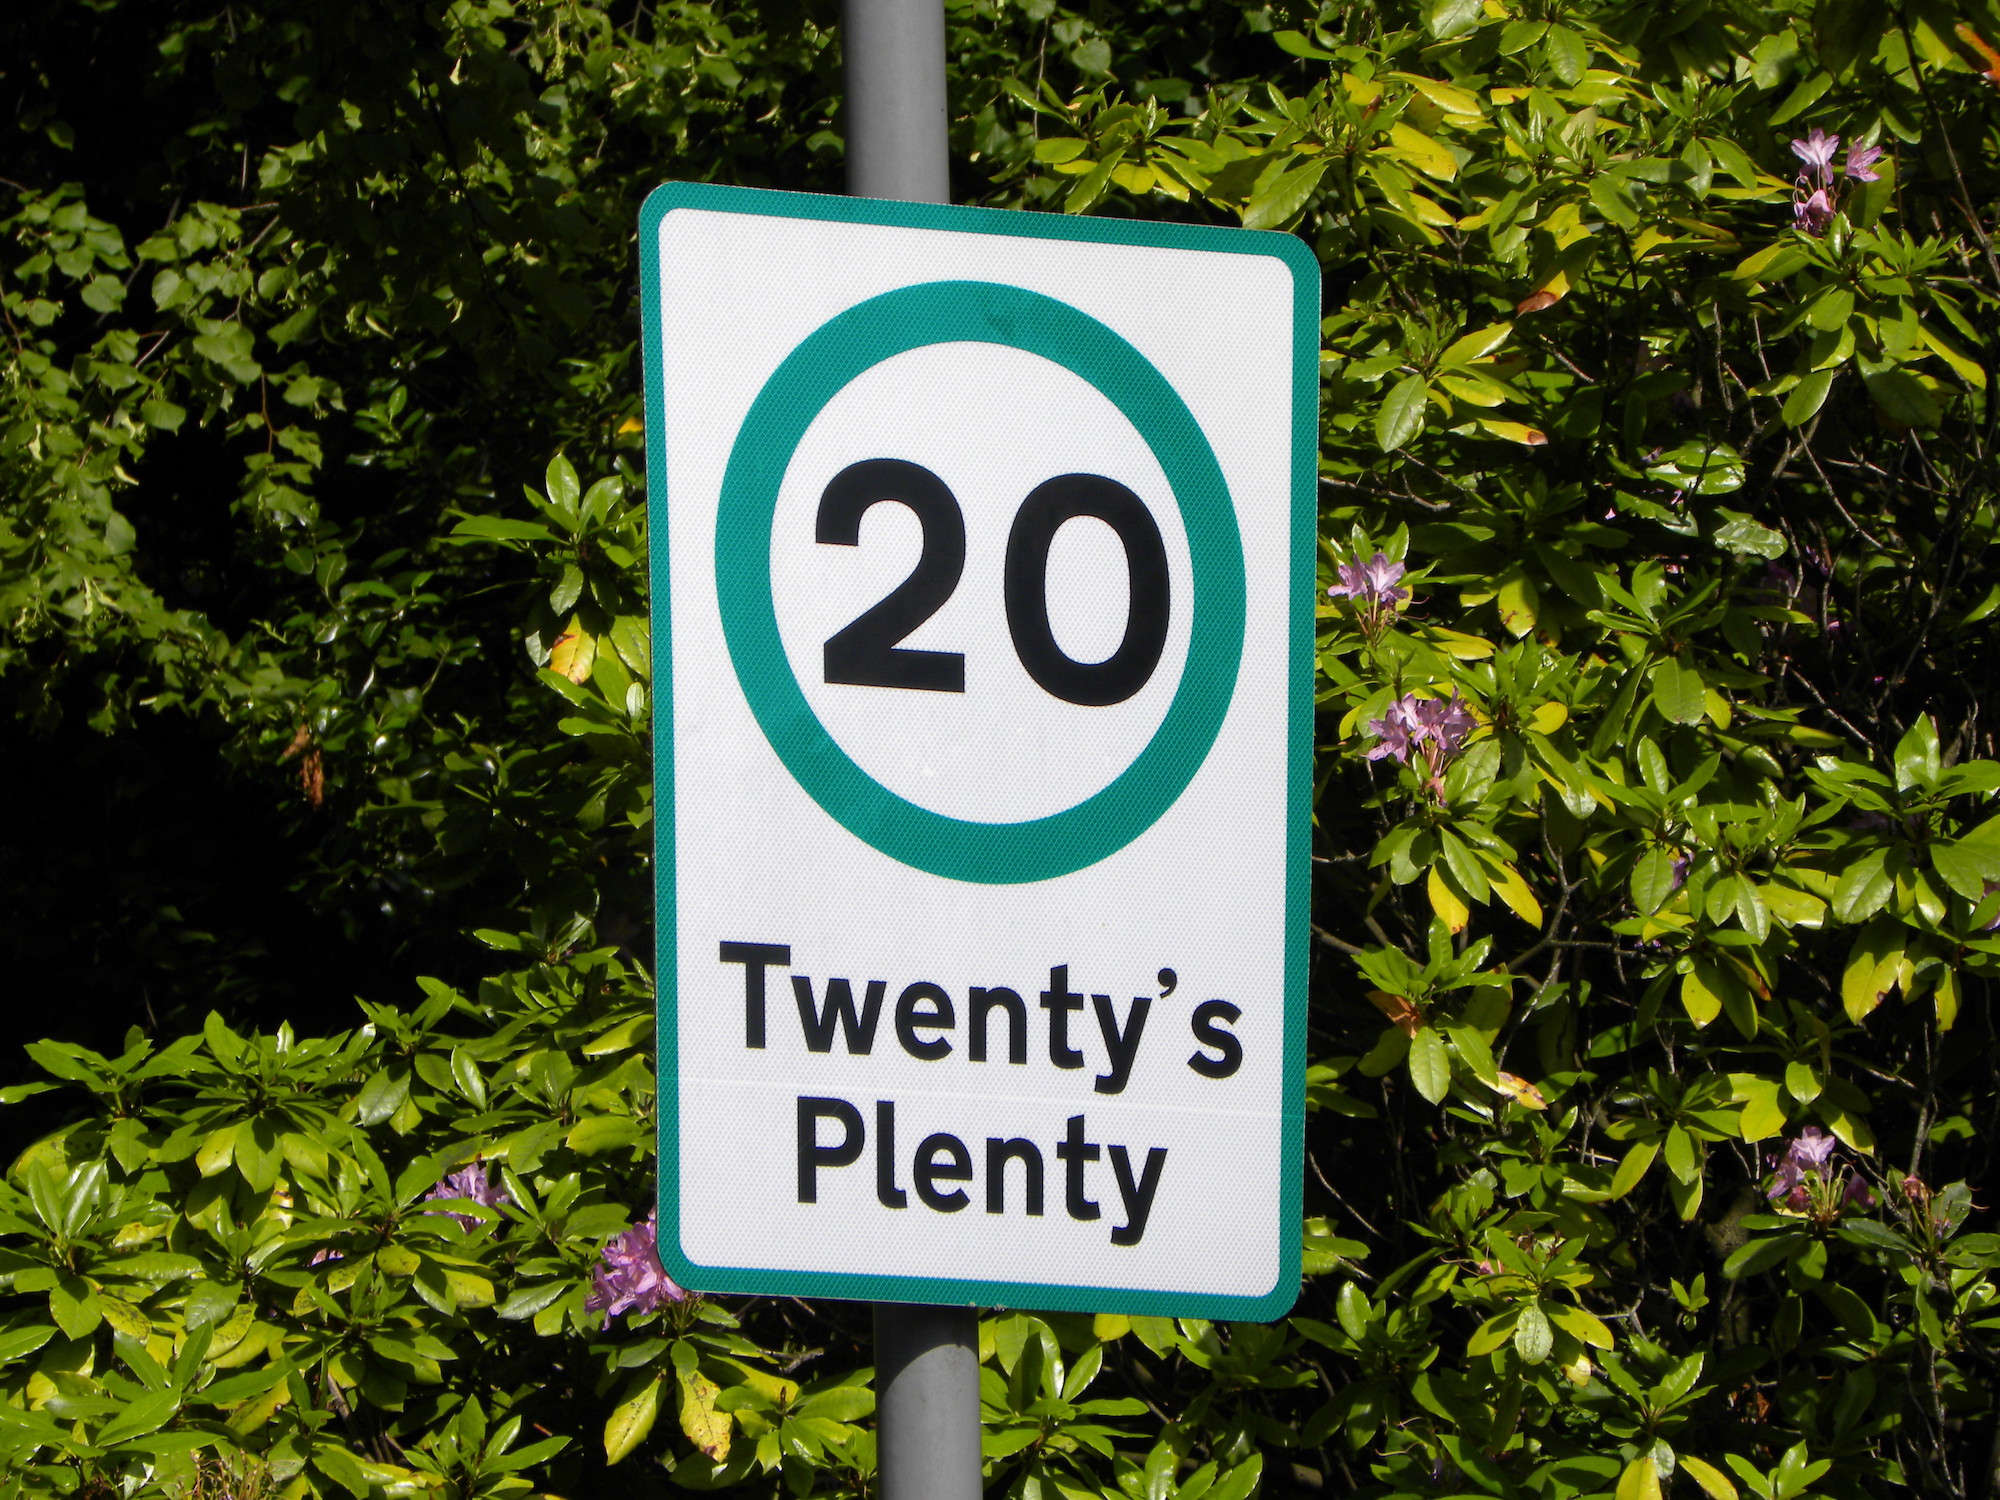 A speed limit sign saying twenty's plenty.